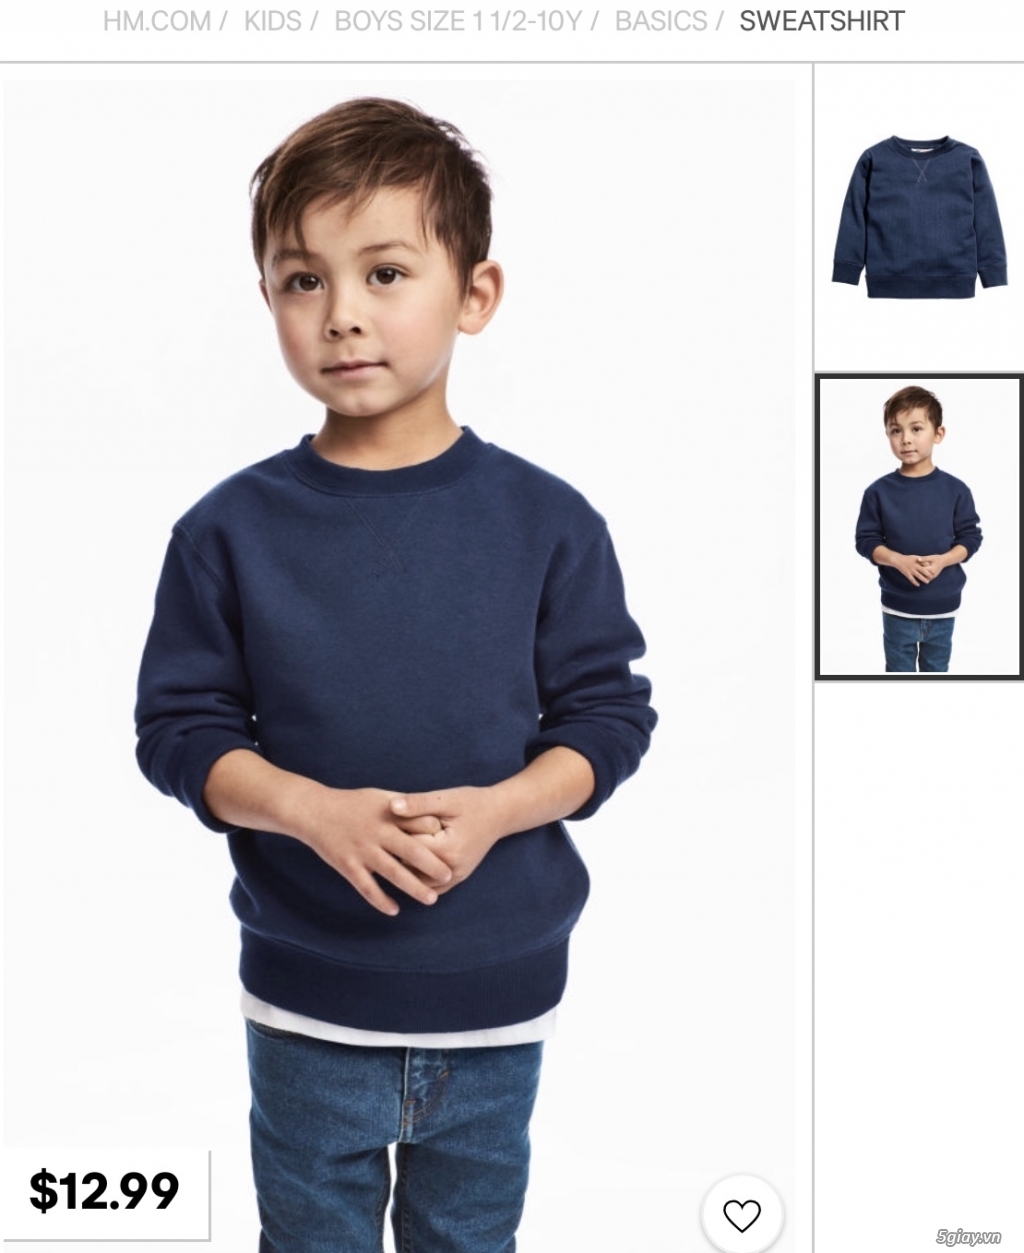 Chuyên quần áo và phụ kiện H&M cho bé hàng chính hãng - 1